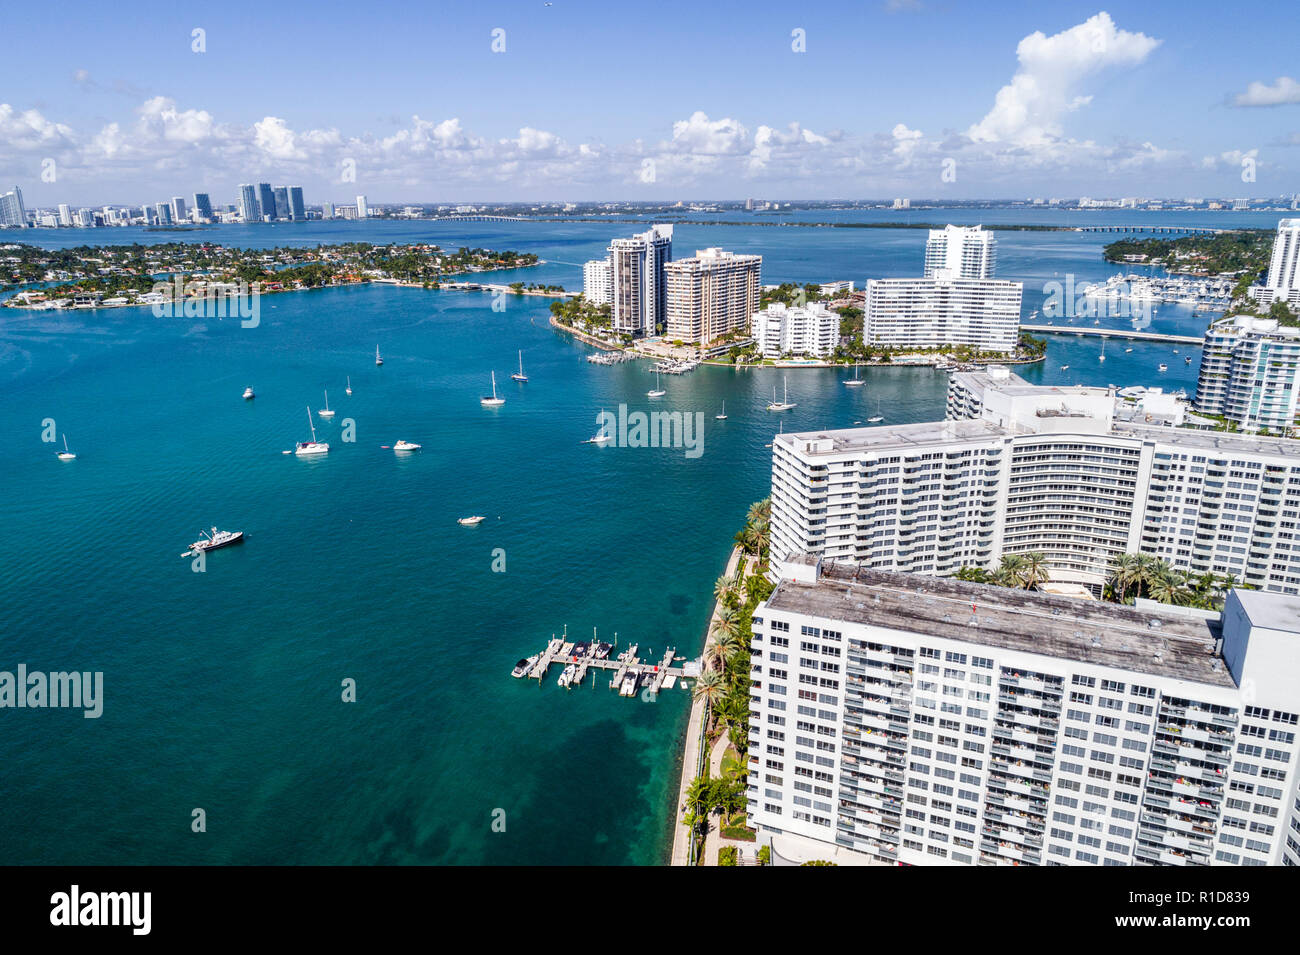 Miami Beach Florida, Biscayne Bay Water, Luftaufnahme aus der Vogelperspektive oben, Flamingo South Beach Wohnanlage, Hochhaus Wolkenkratzer gebaut Stockfoto